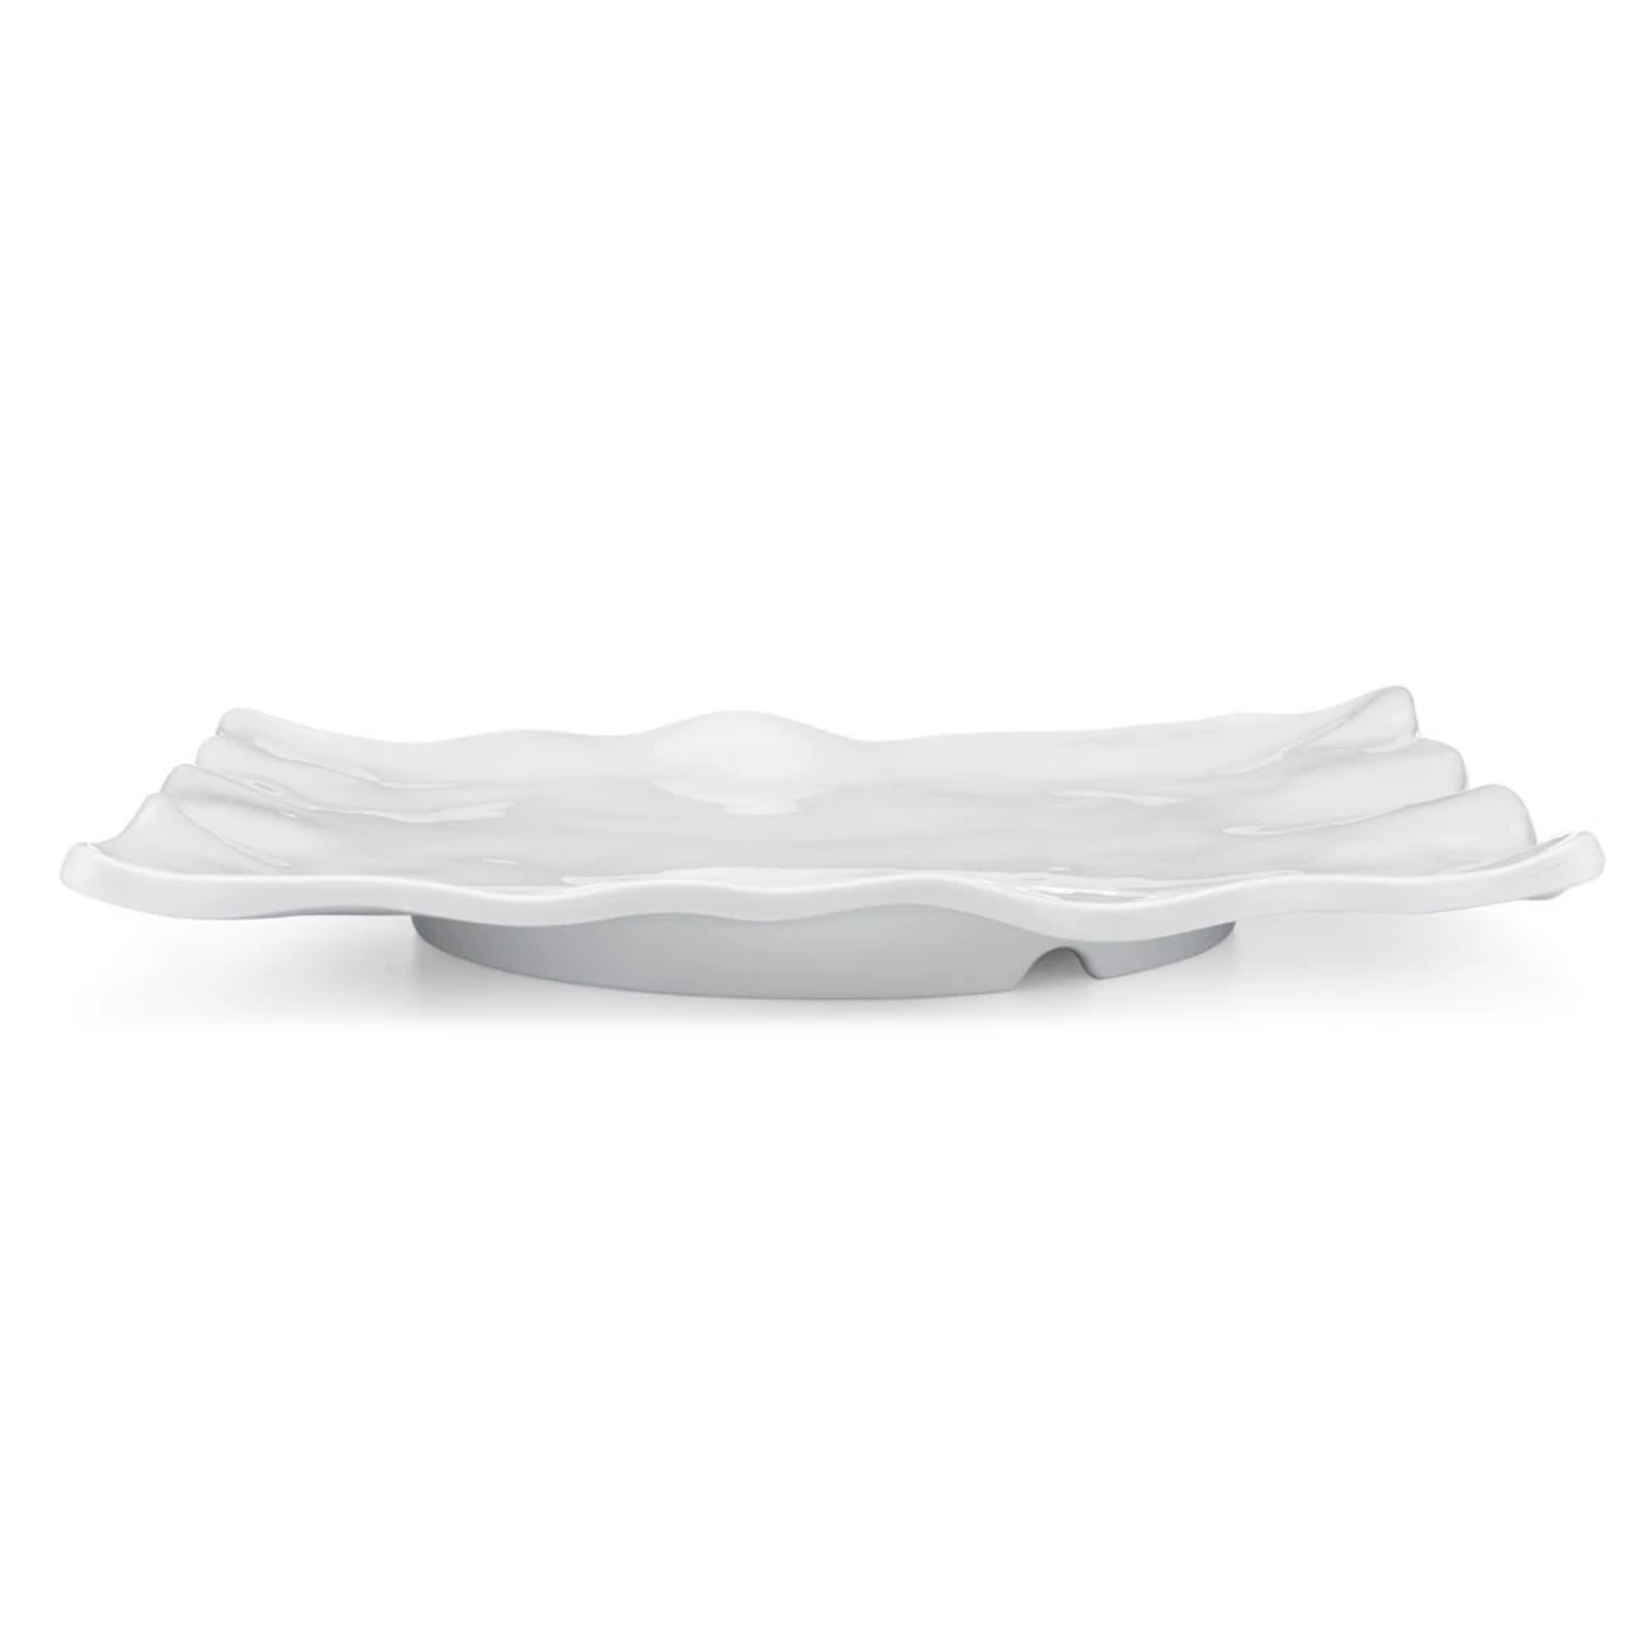 Melamine White Ruffle Rectangle Small Platter